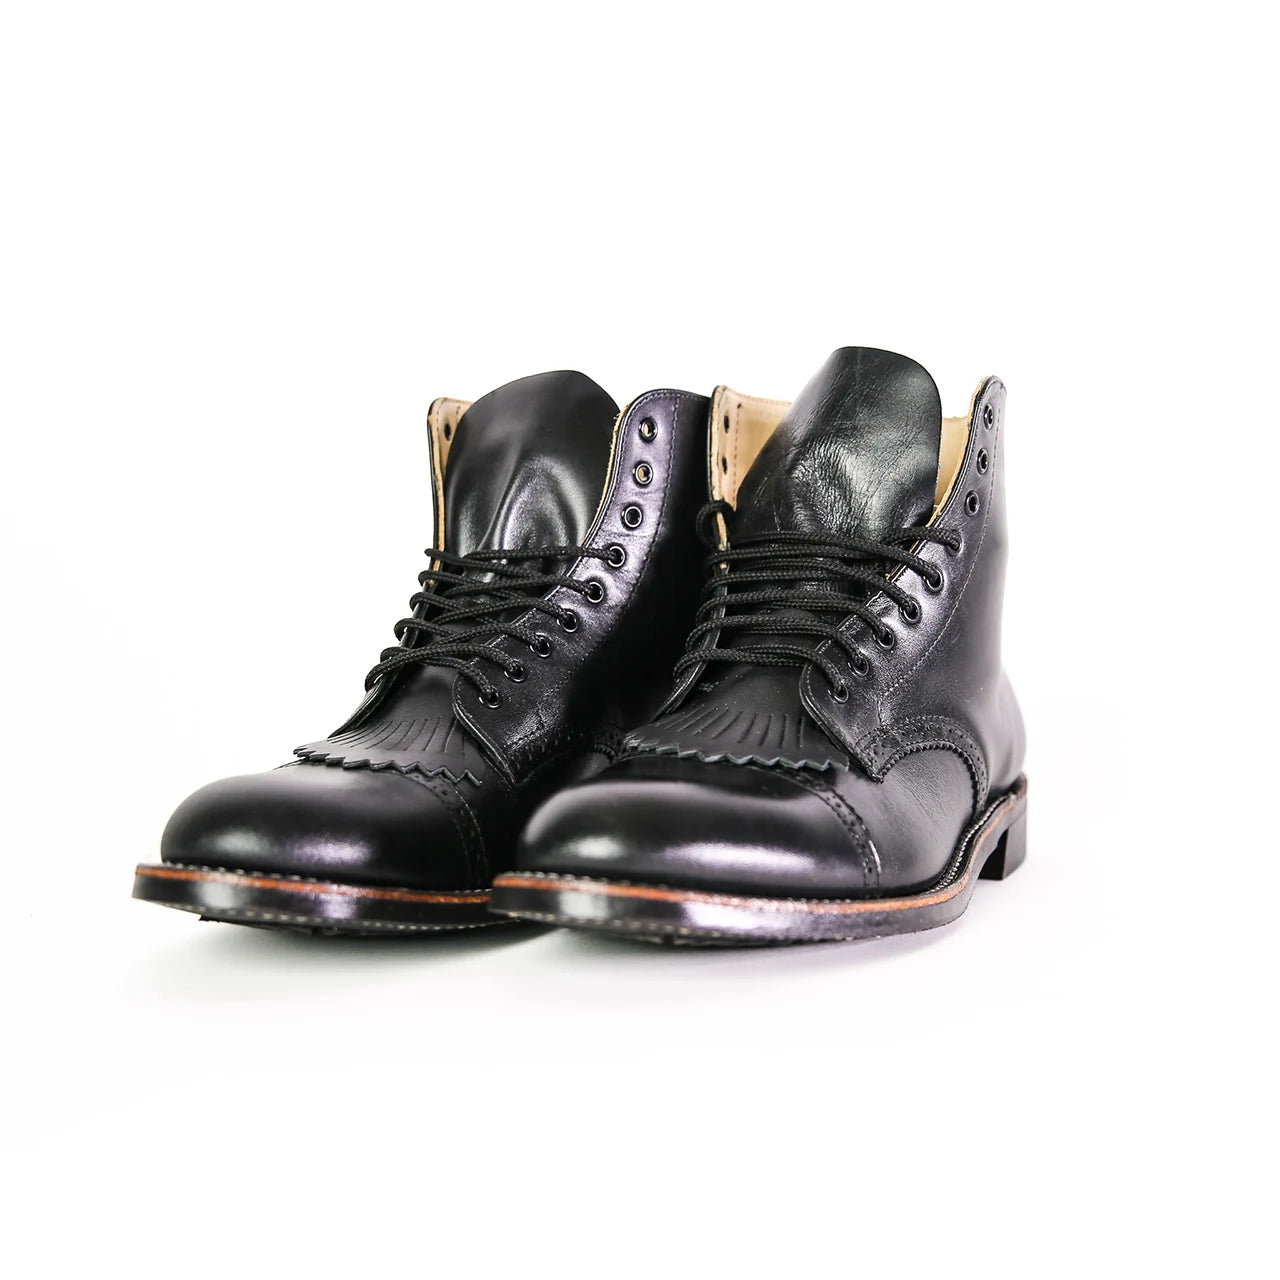 Parade Boot Brogue - Black Chrome - Boots